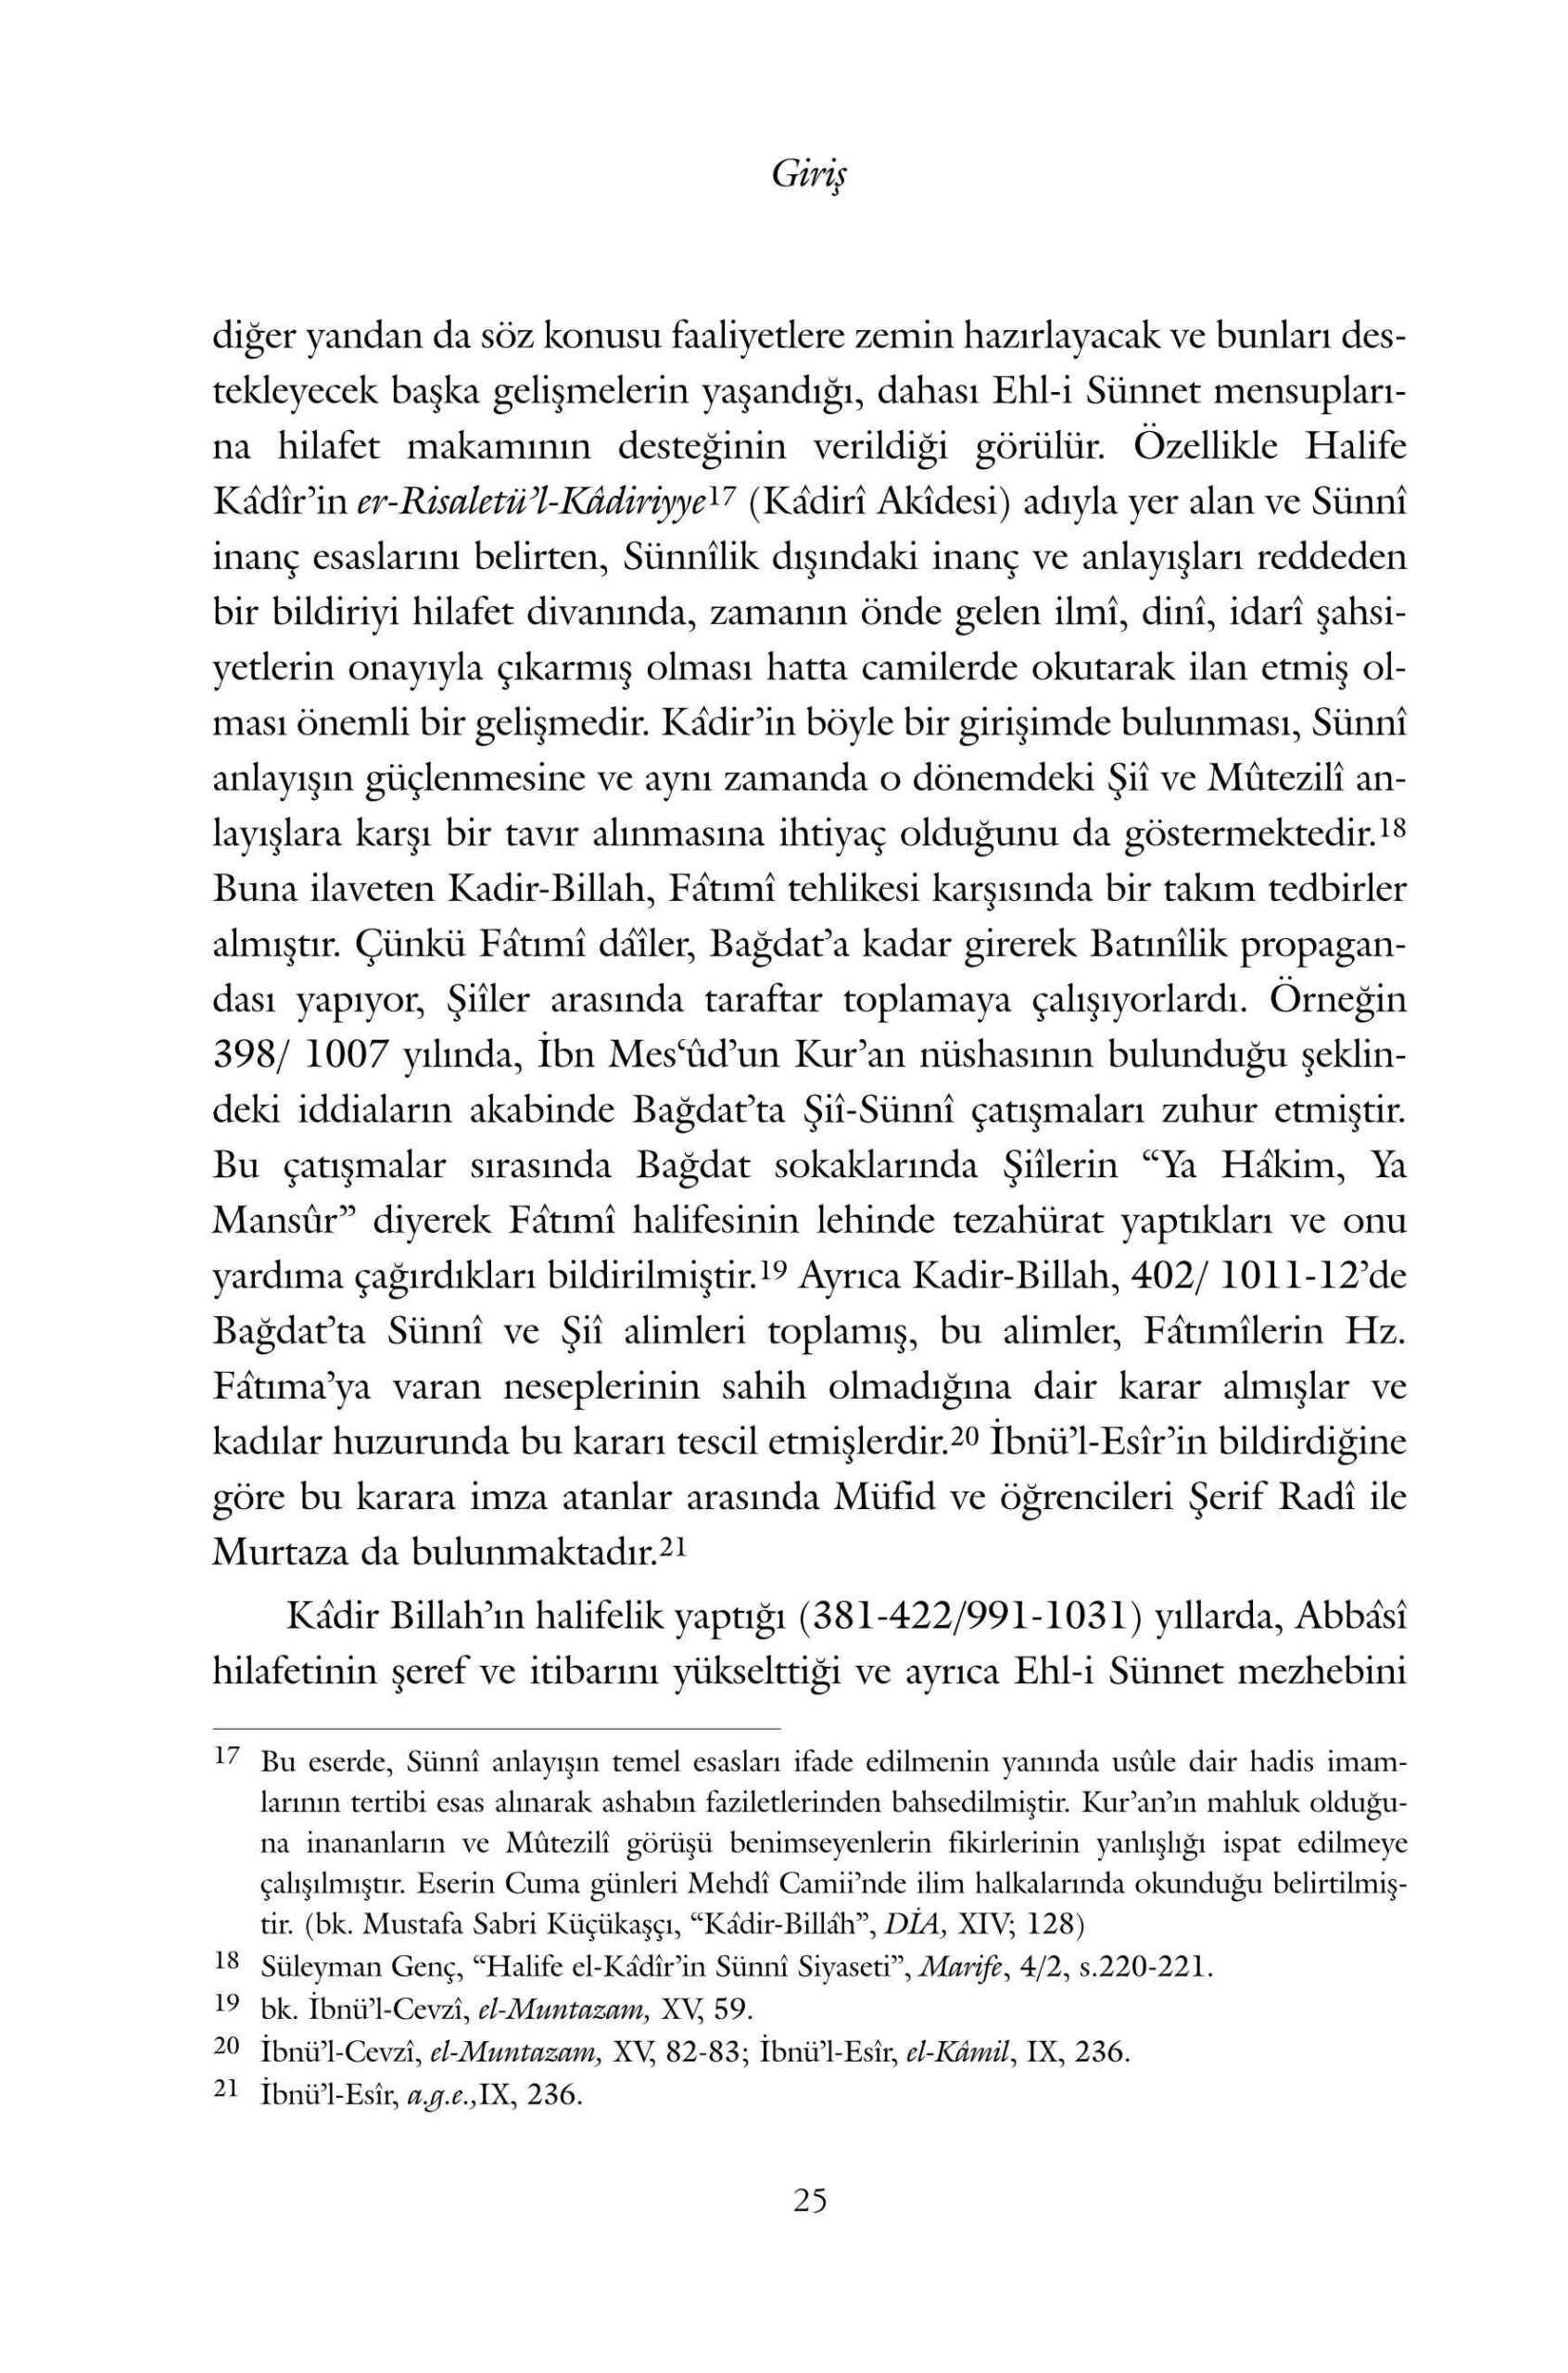 Halil Ibrahim Bulut - Seyh Mufid ve Siada Usuli Farklilasma Sureci - IsikAkademiY.pdf, 358-Sayfa 